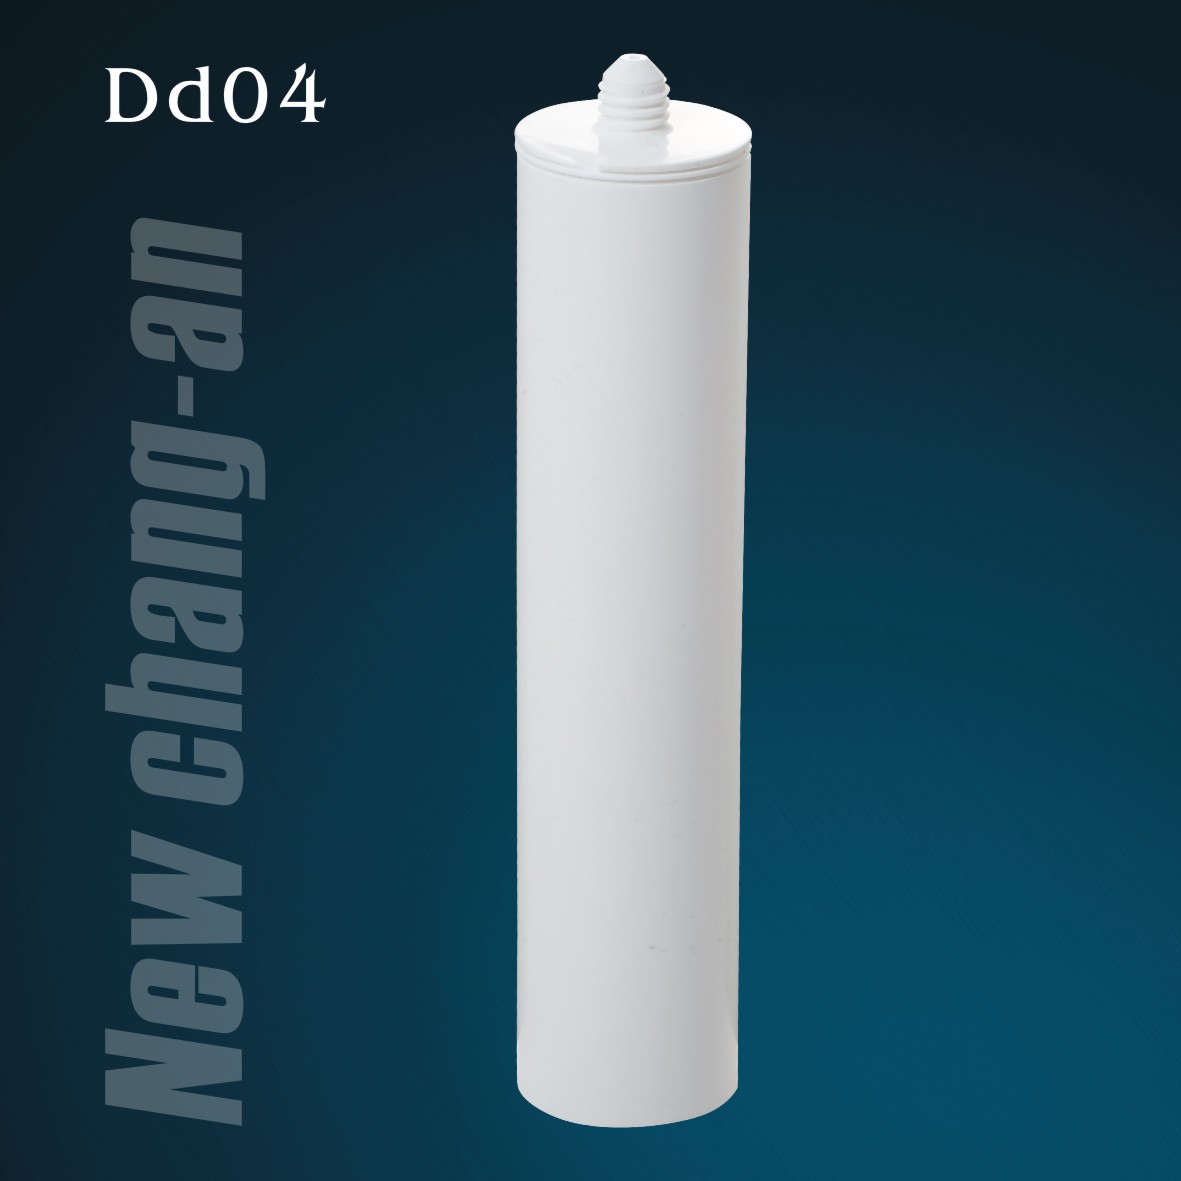 300 مل خرطوشة بلاستيكية HDPE فارغة لمانع تسرب السيليكون Dd04